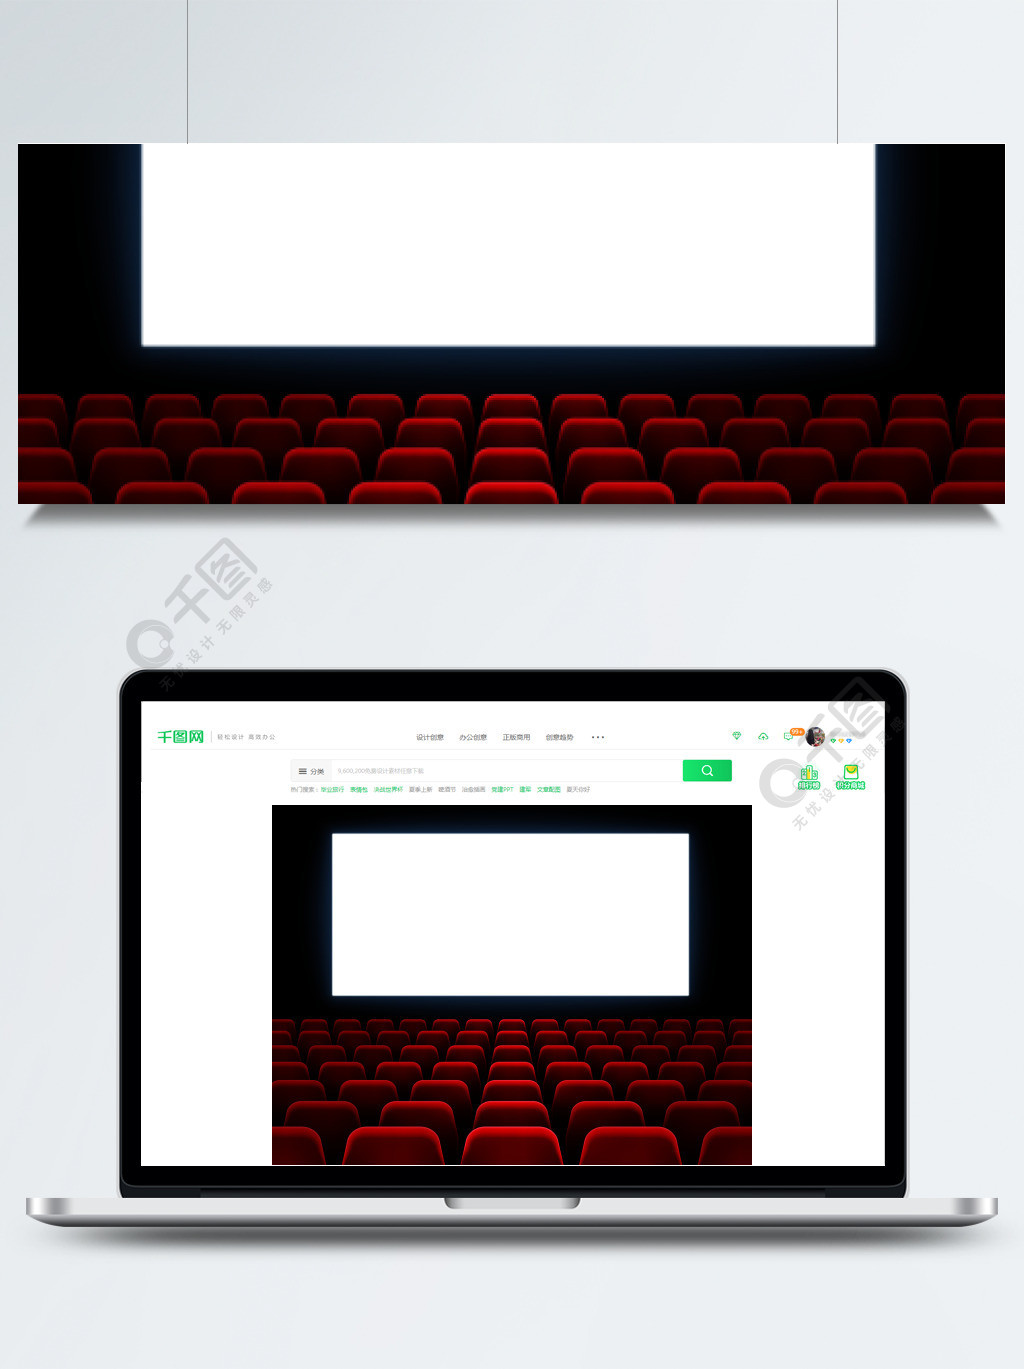 院的电影首映活动电影院白色空白屏幕在电影大厅内部与空座位矢量背景